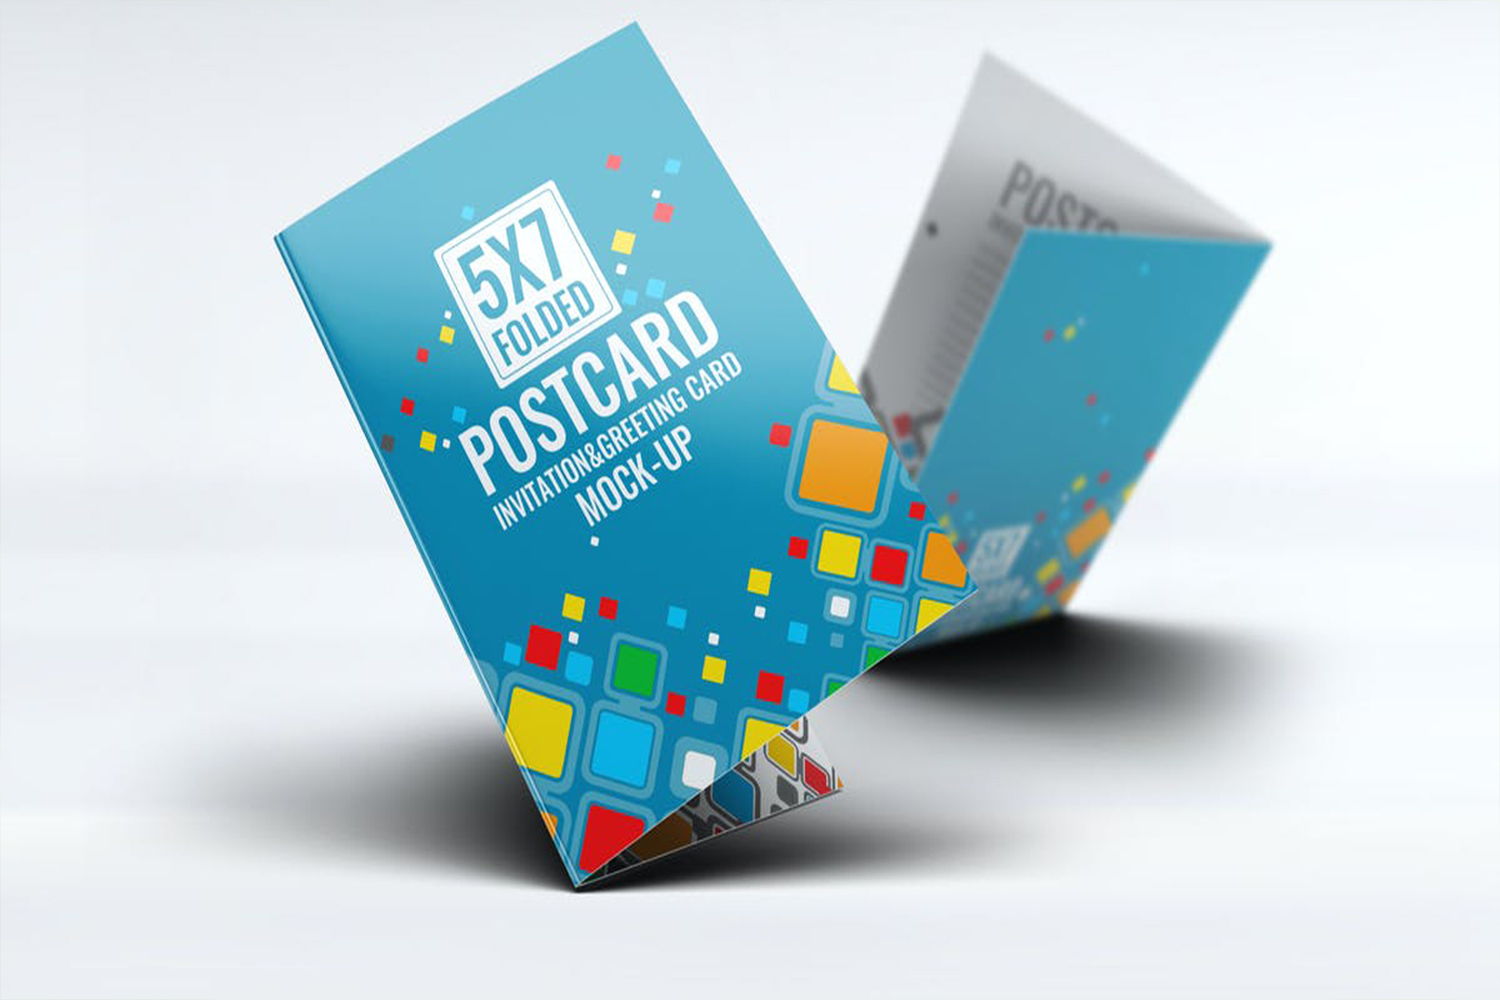 Postcard Invitation Greeting Card V.2 Mock-Up  Free Download